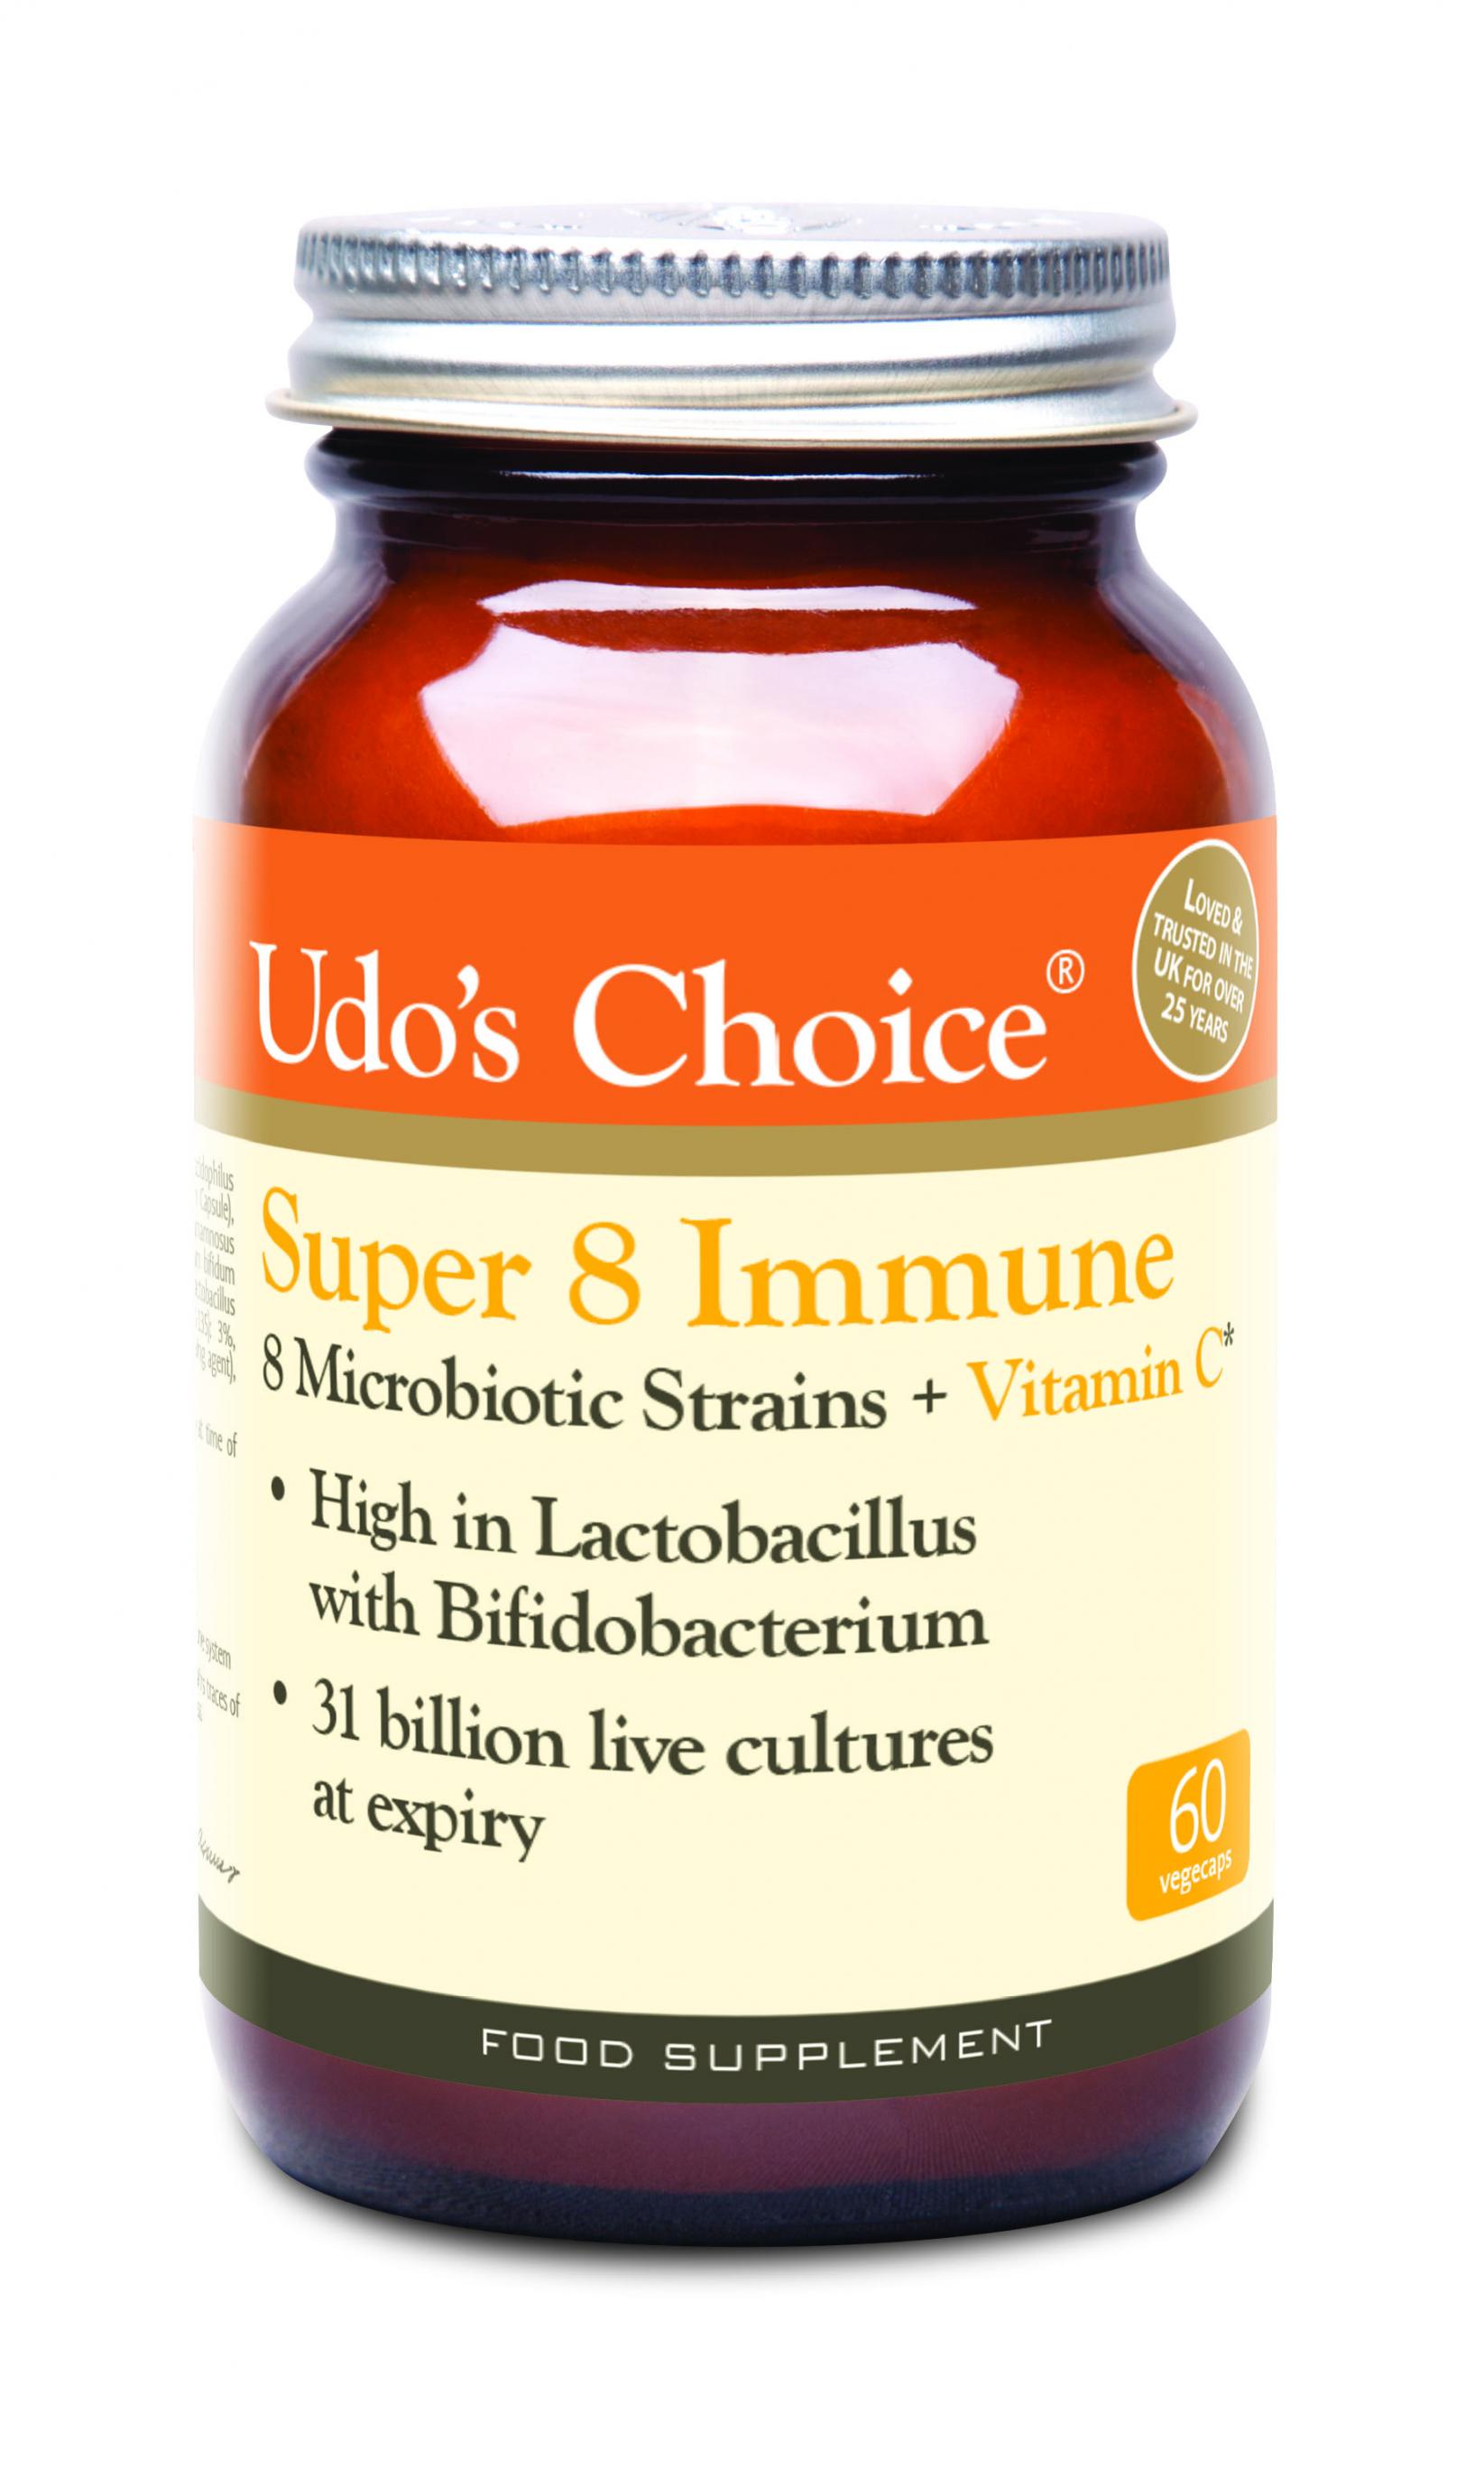 Super 8 Immune 8 Microbiotic Strains + Vitamin C 60's